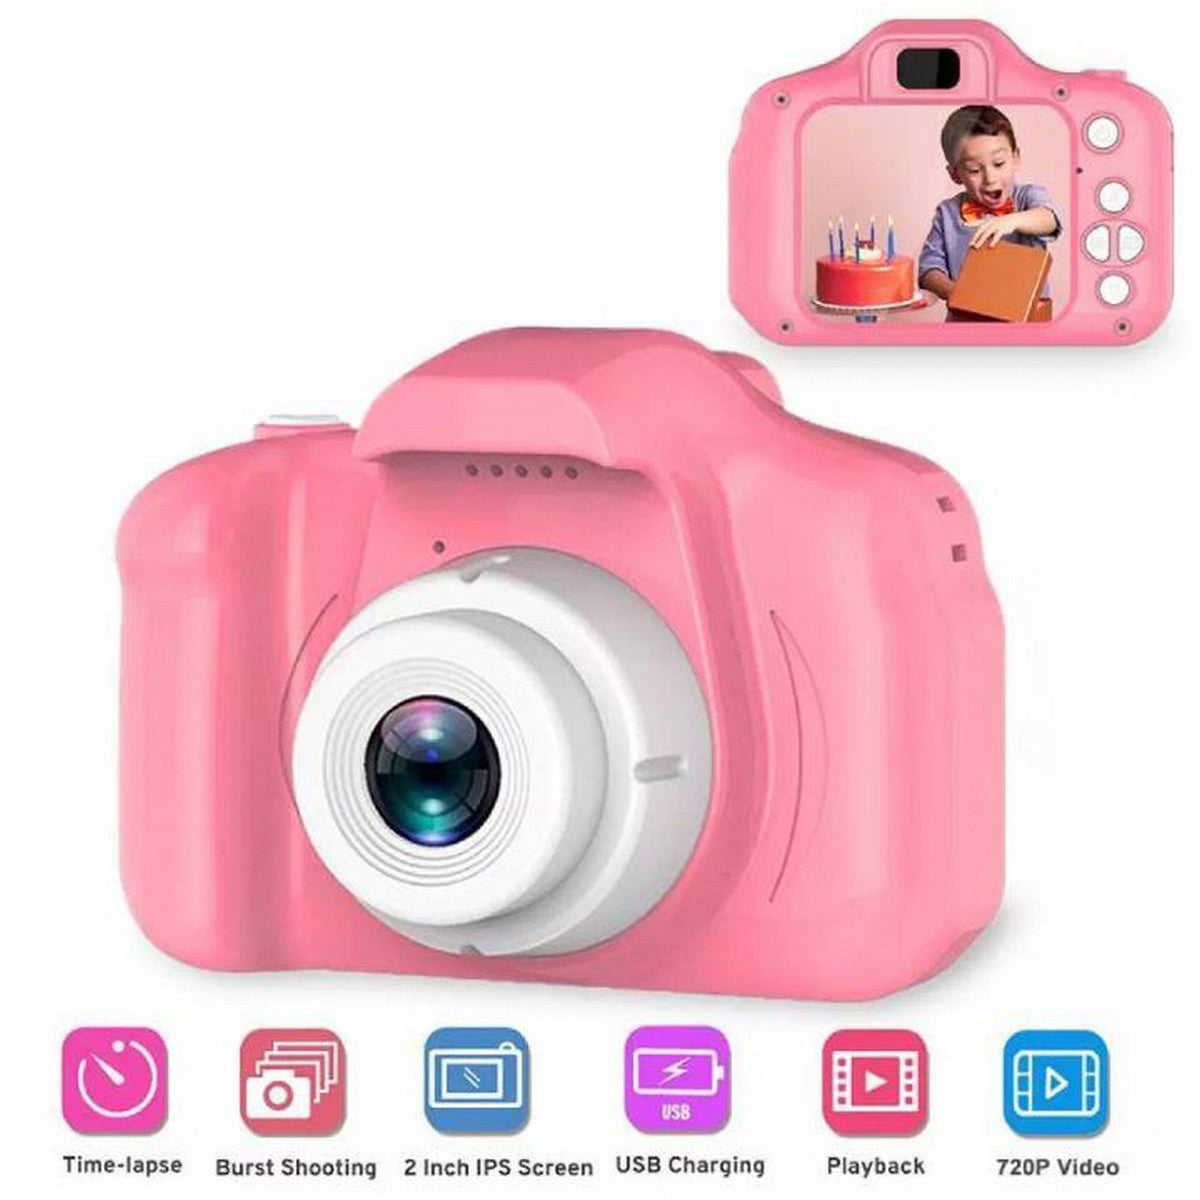 Kids Digital Mini Video Camera